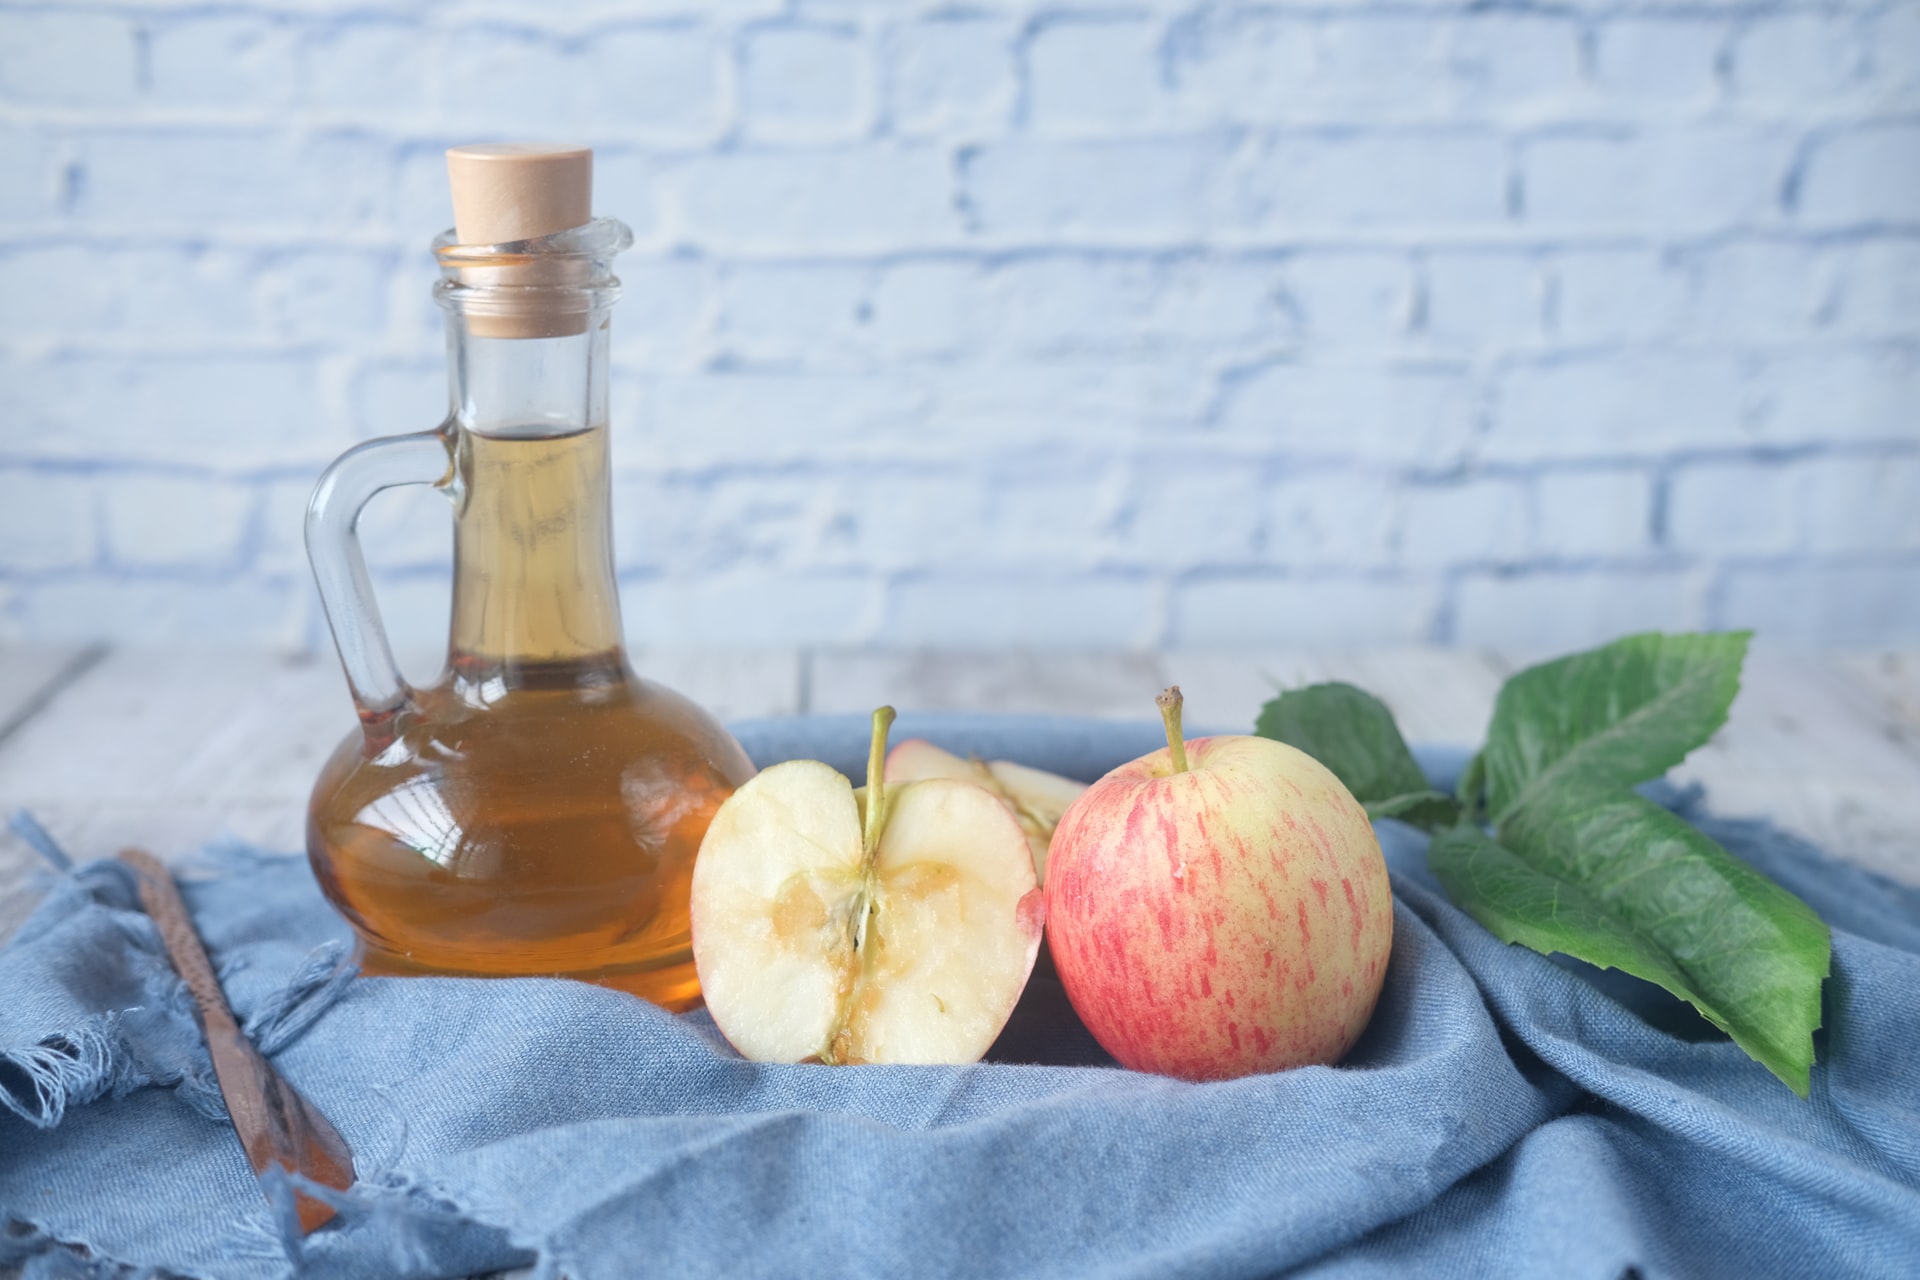 Aprenda a fazer vinagre de maçã caseiro, é muito simples